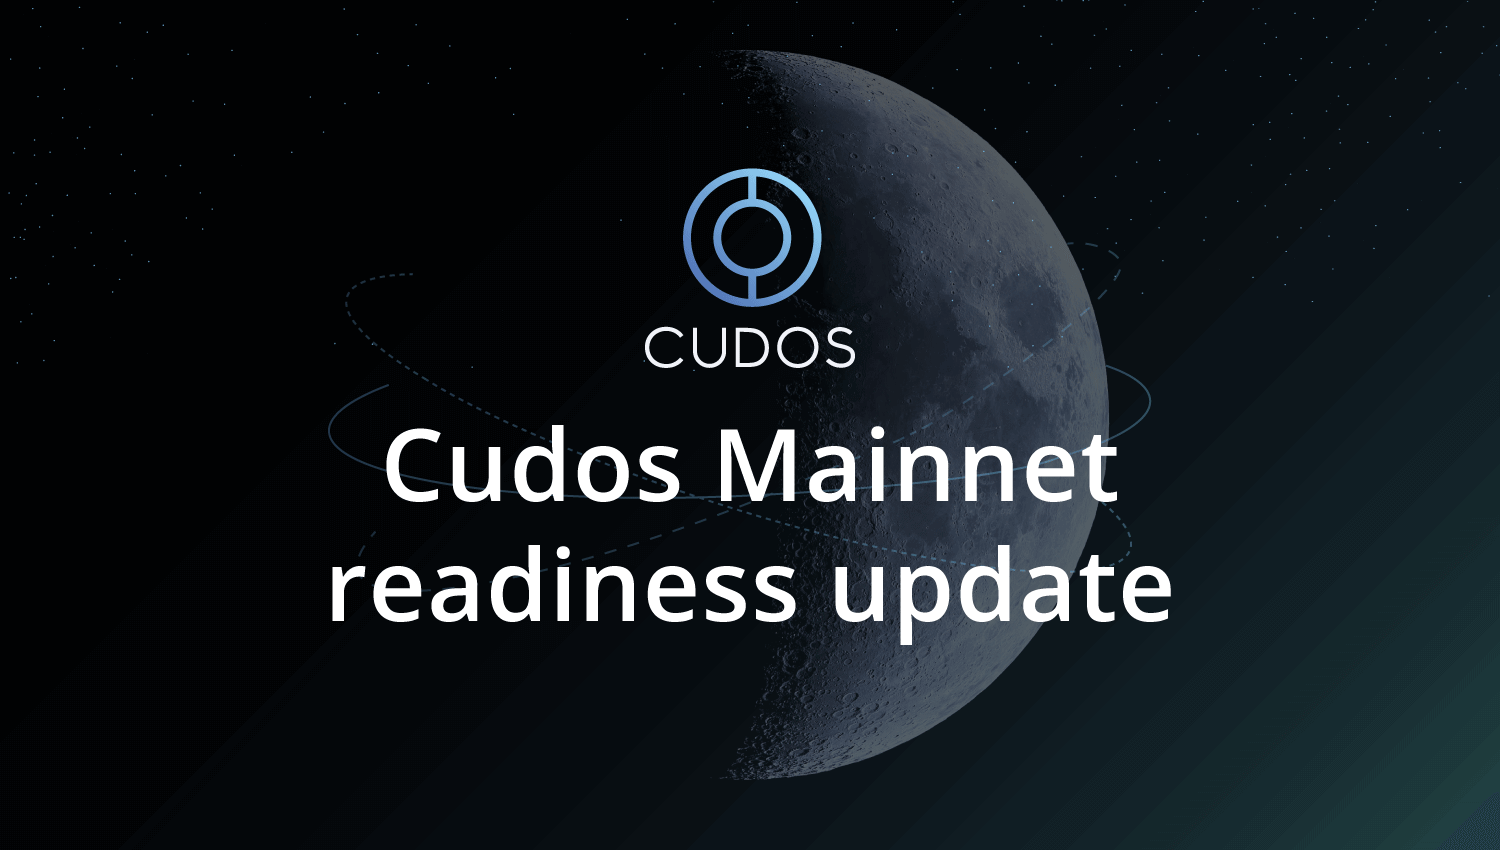 Cudos mainnet readiness update